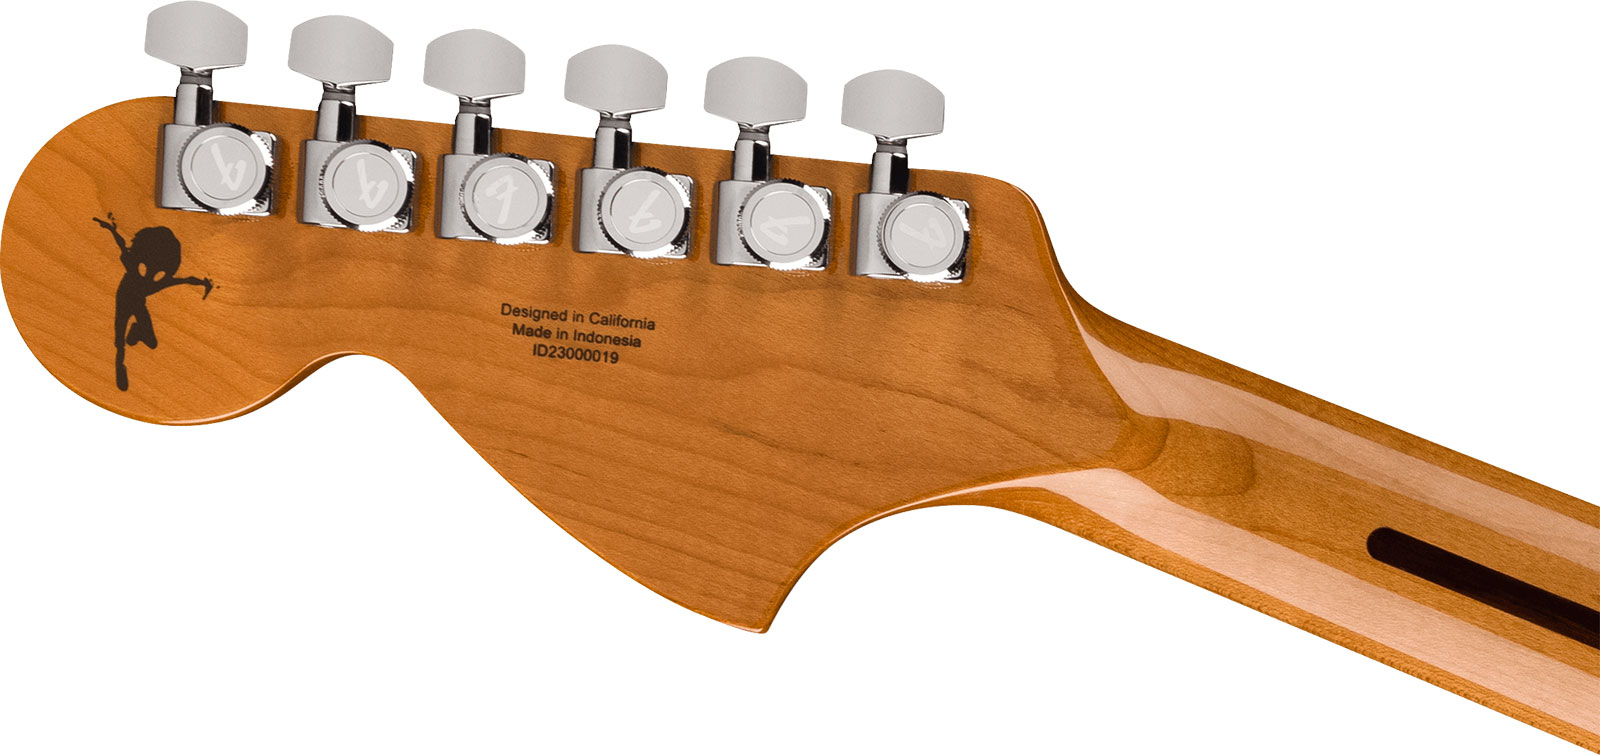 Fender Tom Delonge Starcaster 1h Seymour Duncan Ht Rw - Satin Surf Green - Guitare Électrique 1/2 Caisse - Variation 4